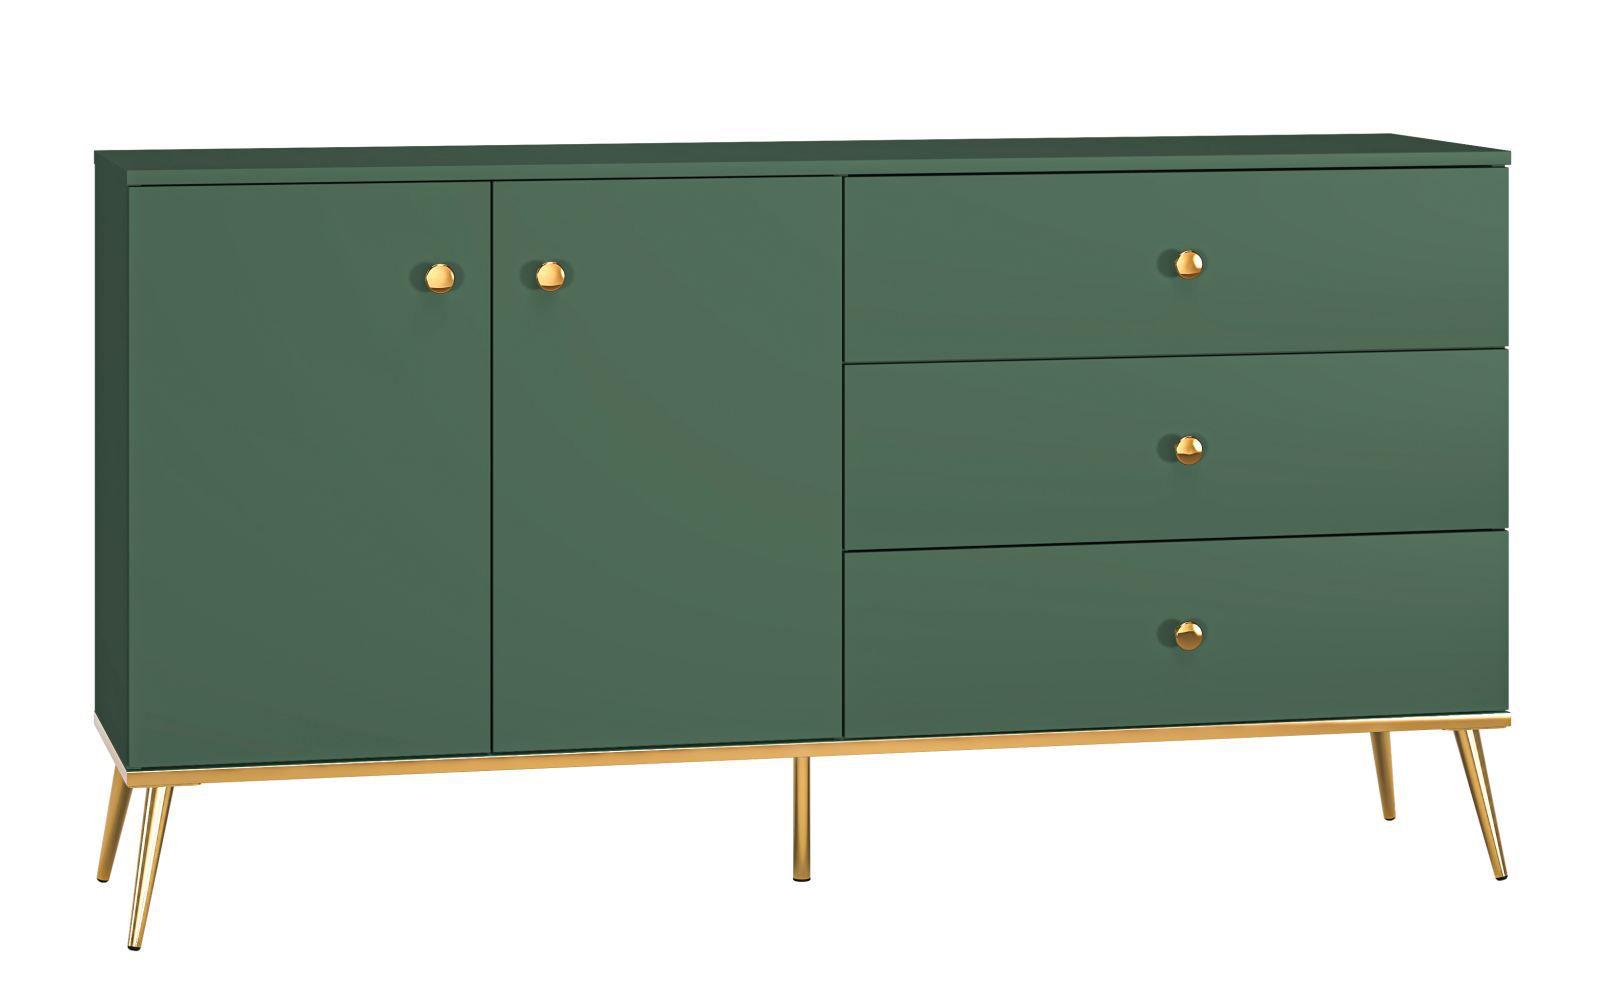 Ladekast /dressoir /sideboard kast Inari 03, kleur: bos groen - afmetingen: 85 x 160 x 40 cm (h x b x d), met 2 deuren, 3 laden en 2 vakken